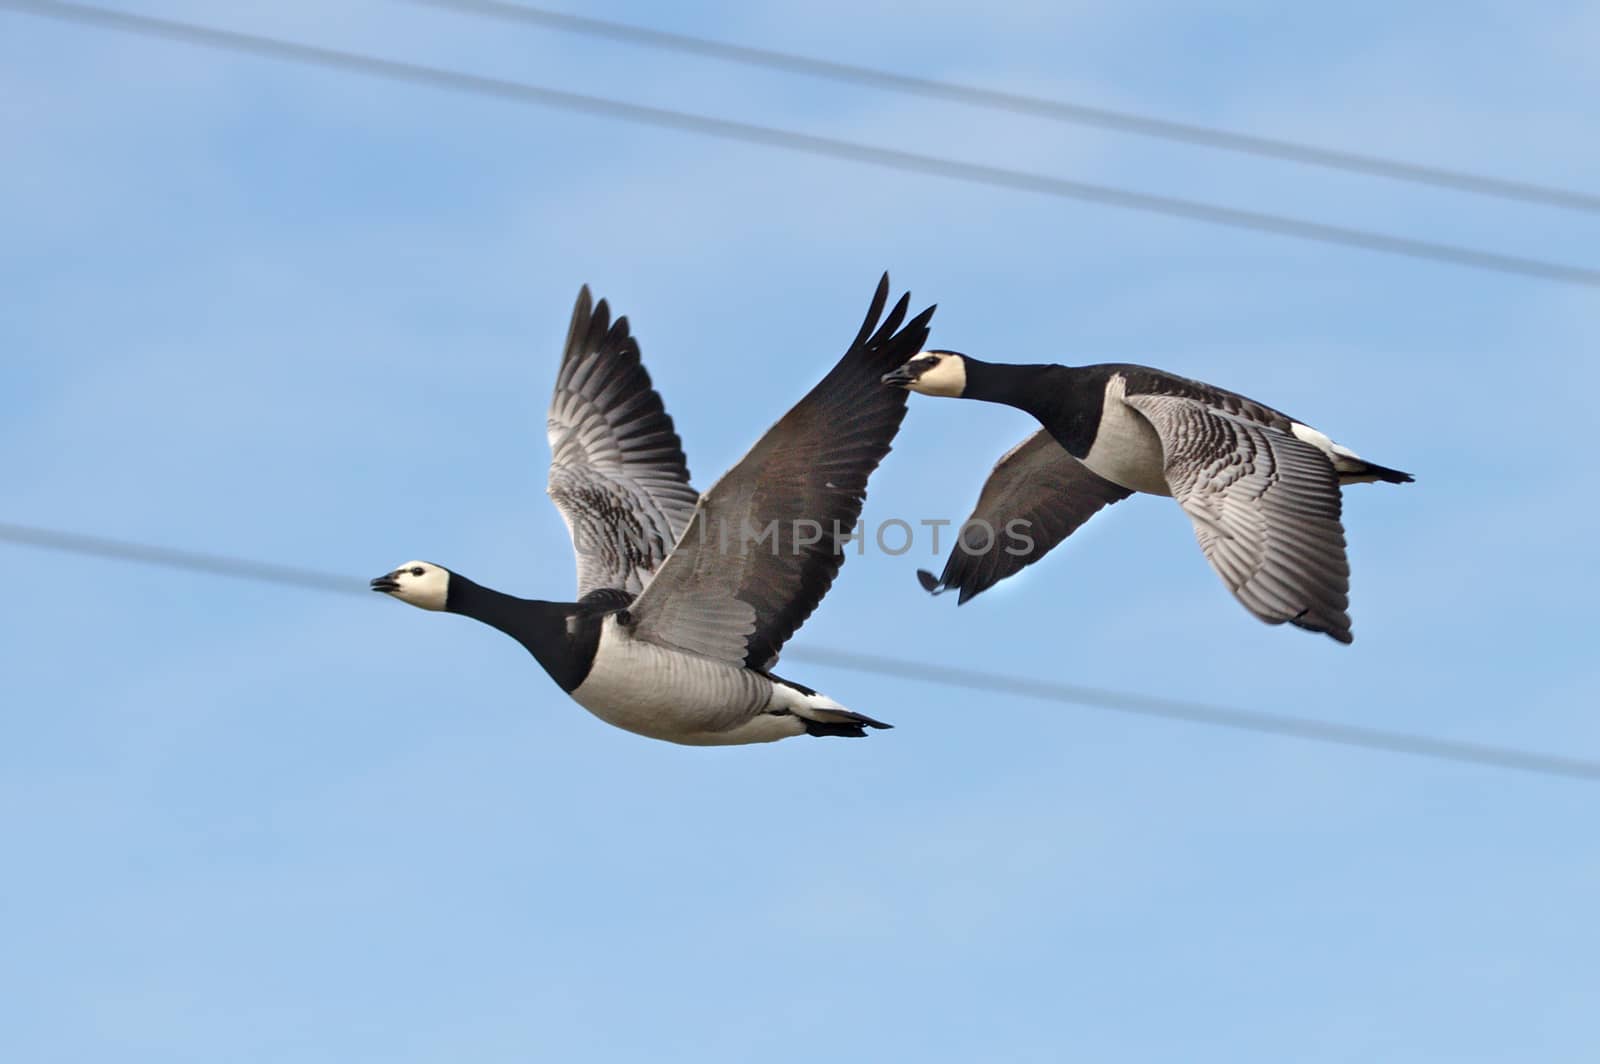 Gooses fly by Valokuva24